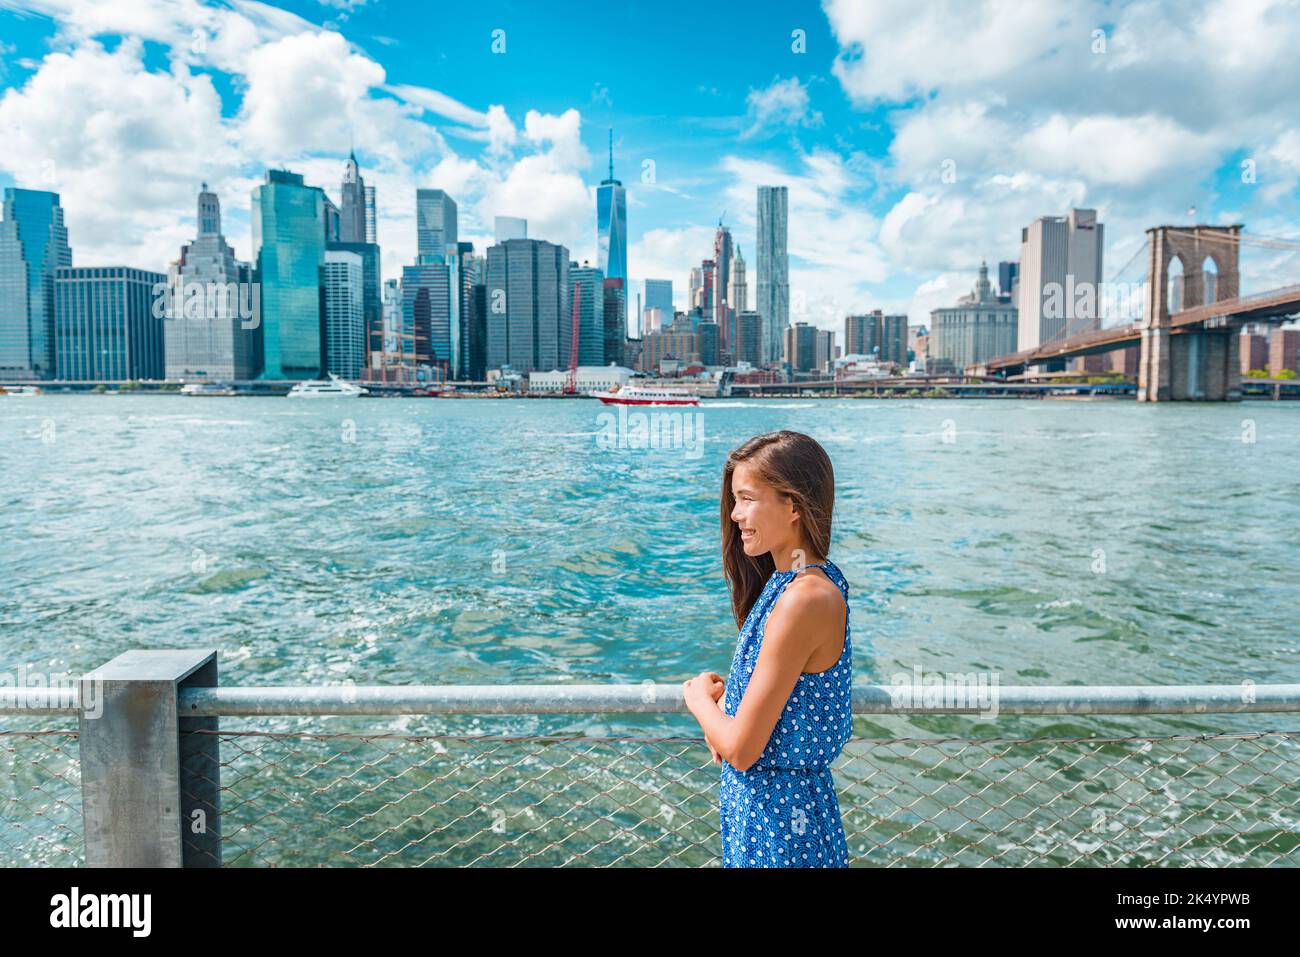 Die Skyline von New York City, Manhattan, von der Brooklyn Waterfront aus gesehen - Frau aus der Sicht. Amerikanische Leute, die über den spazieren und dabei den Blick auf Manhattan genießen Stockfoto